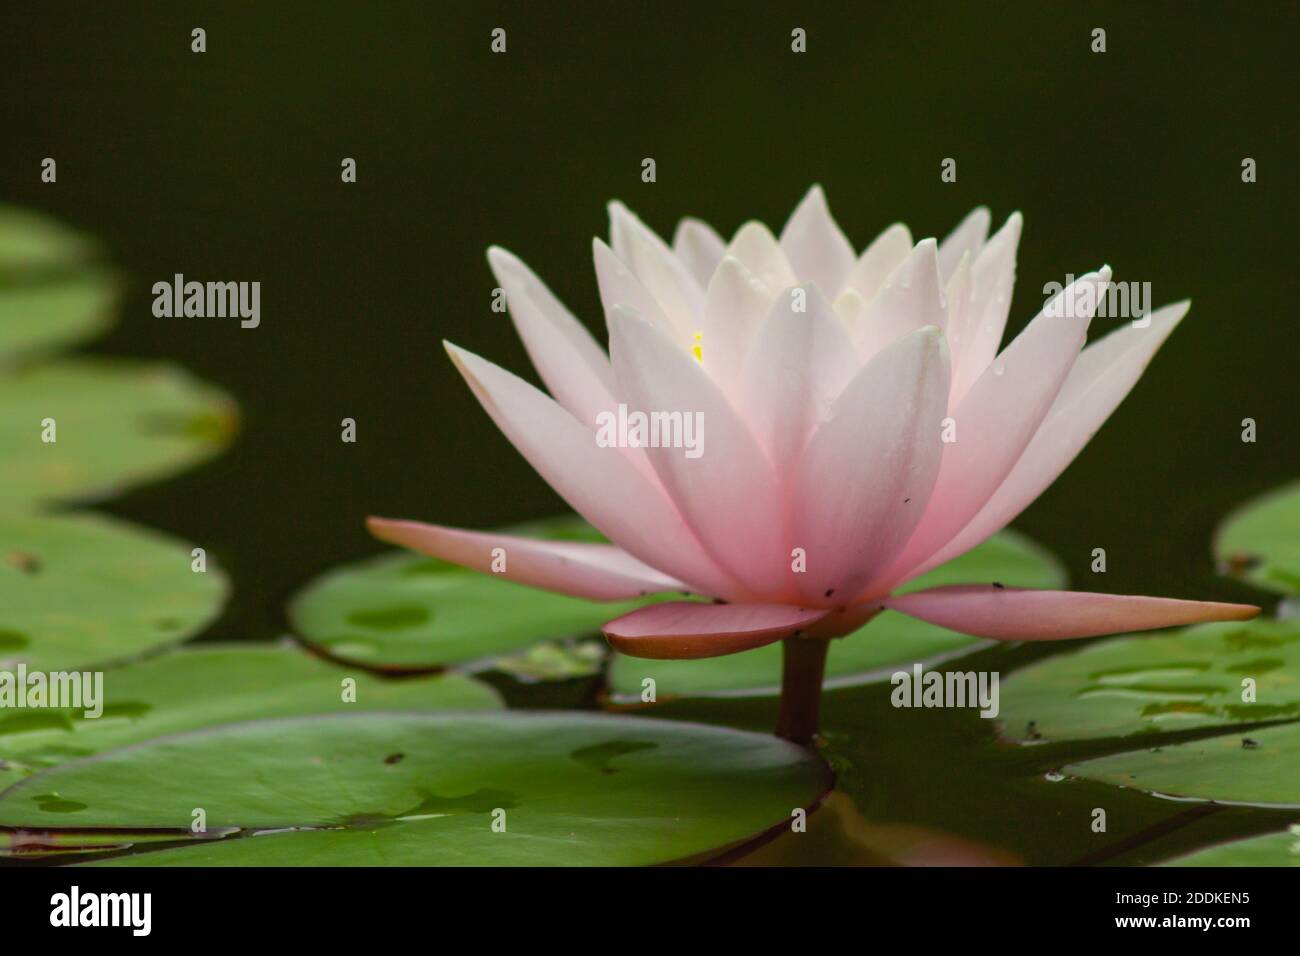 Belle fleur de nénuphars avec ses feuilles rondes dans un étang. Les belles réflexions de la fleur dans l'eau sont également observées. Banque D'Images